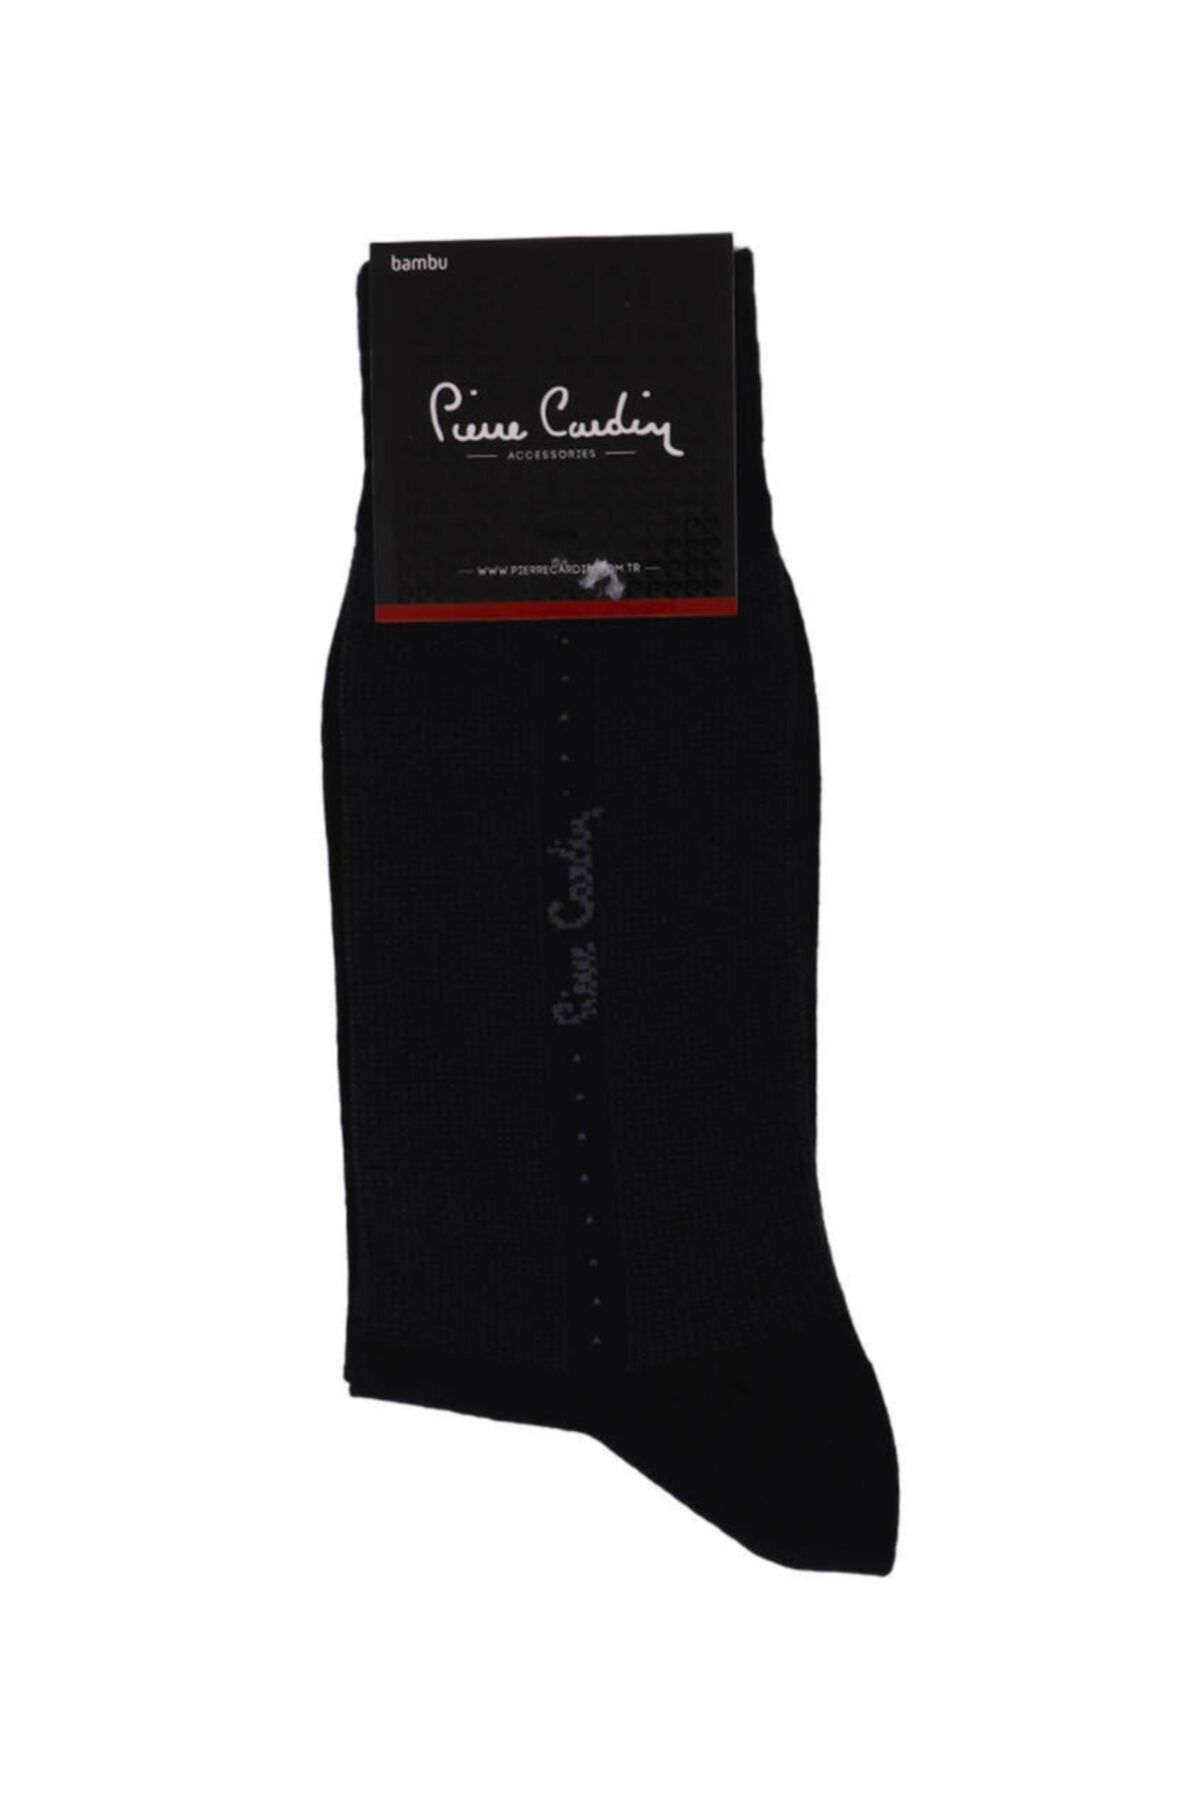 Pierre Cardin Erkek Lacivert Çorap